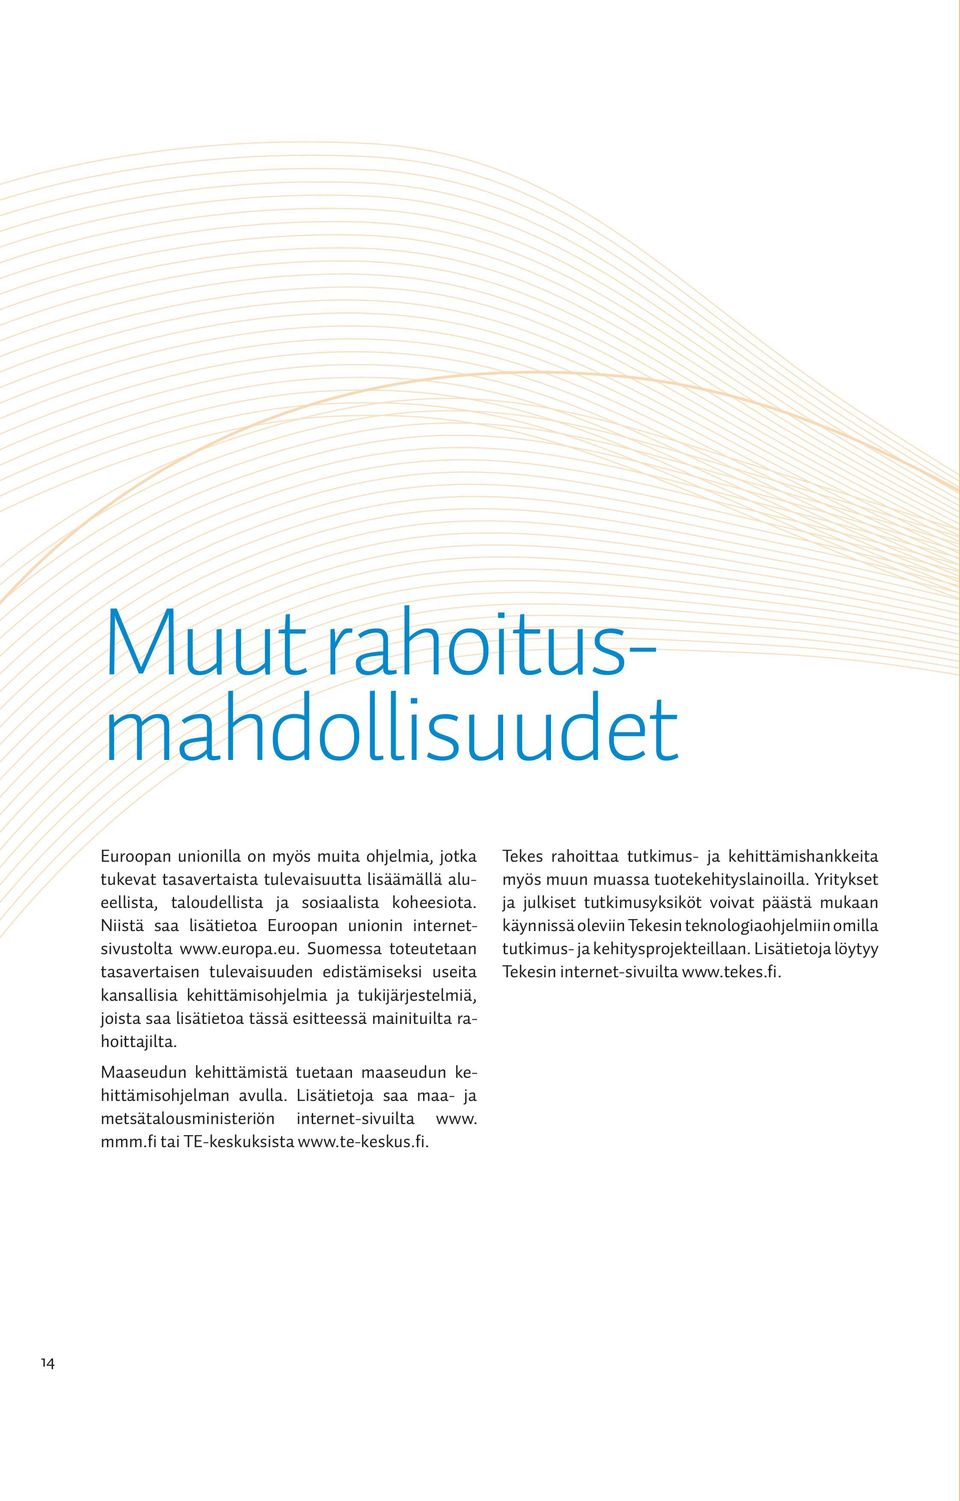 opa.eu. Suomessa toteutetaan tasavertaisen tulevaisuuden edistämiseksi useita kansallisia kehittämisohjelmia ja tukijärjestelmiä, joista saa lisätietoa tässä esitteessä mainituilta rahoittajilta.